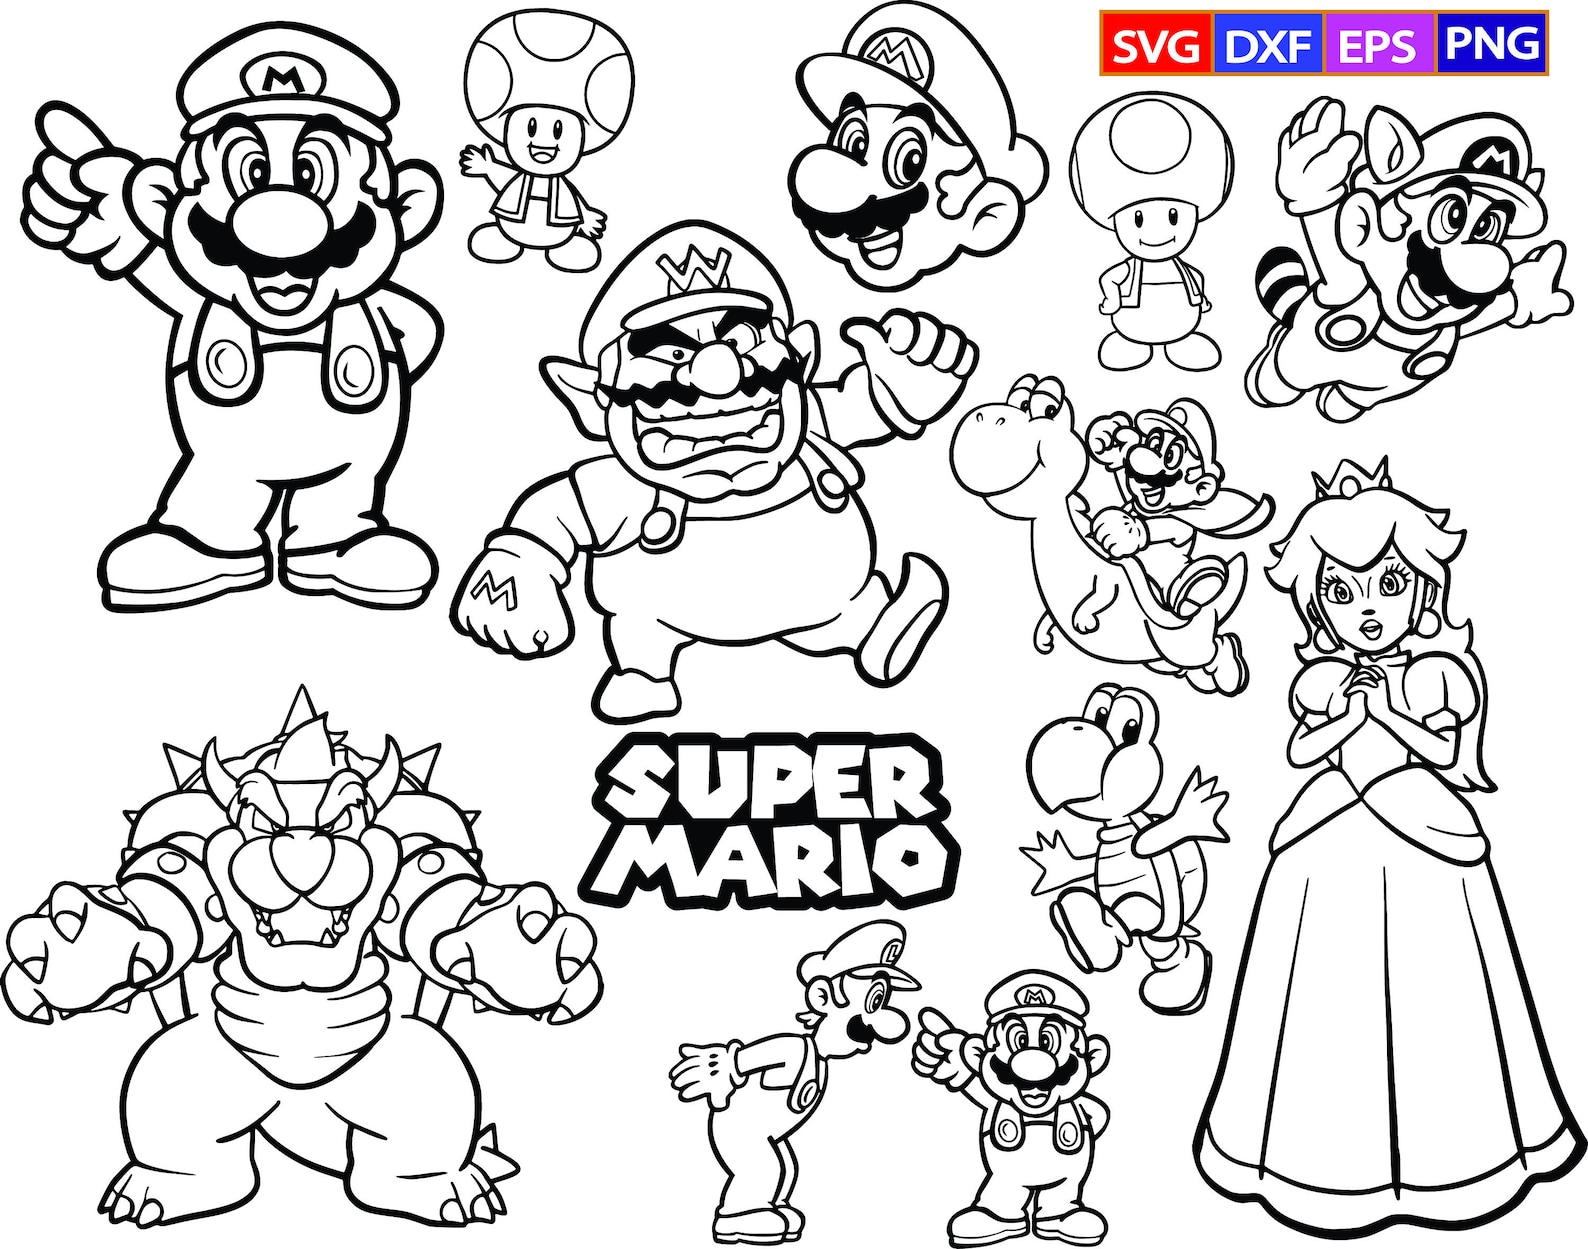 Super Mario 12 SVG BundleSuper Mario SilhouetteMario | Etsy